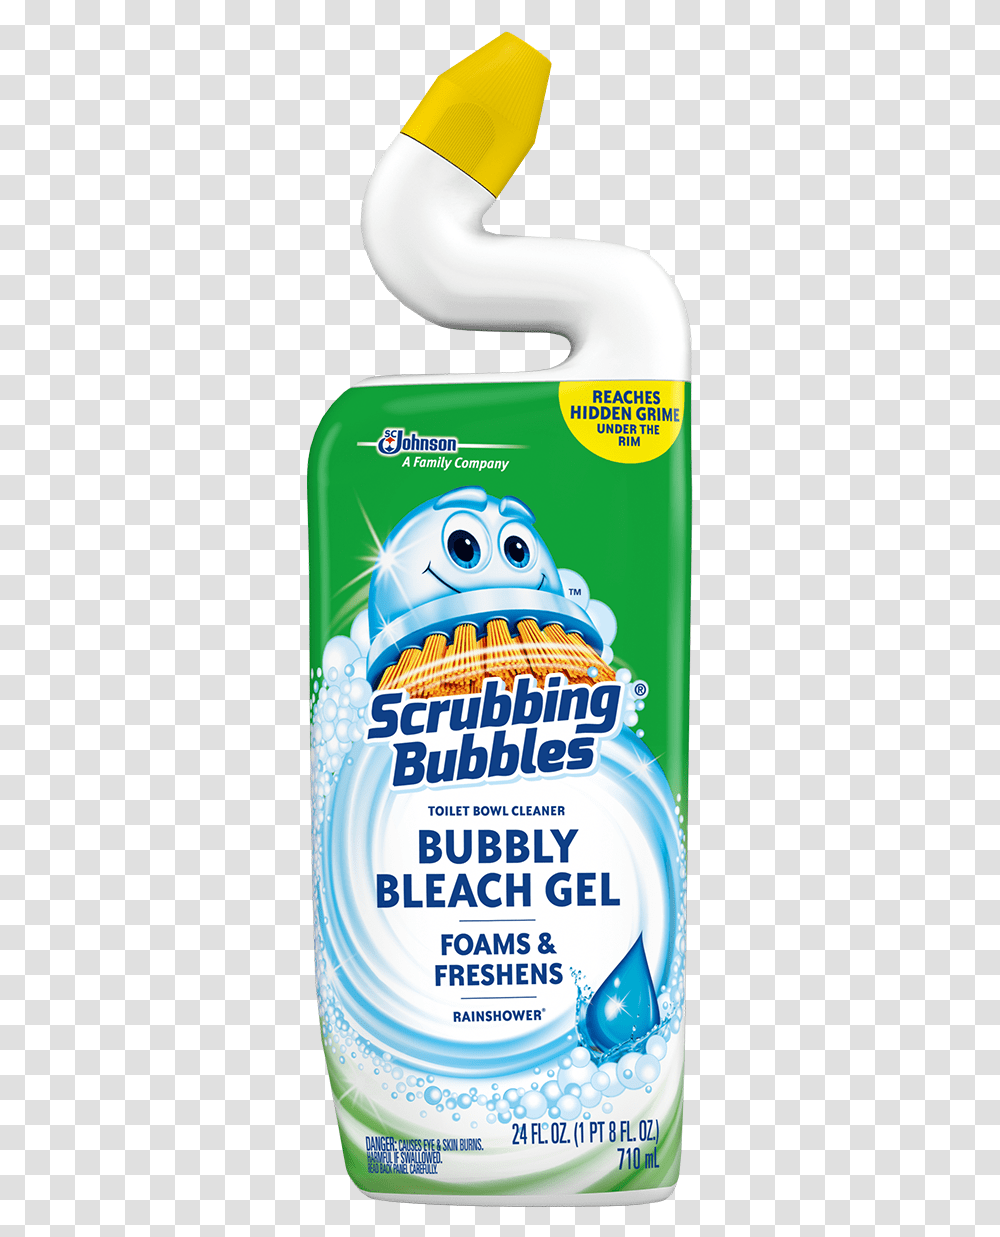 Foam Bubbles Scrubbing Bubbles Bubbly Bleach Gel Toilet Bowl Cleaner, Advertisement, Poster, Flyer, Paper Transparent Png